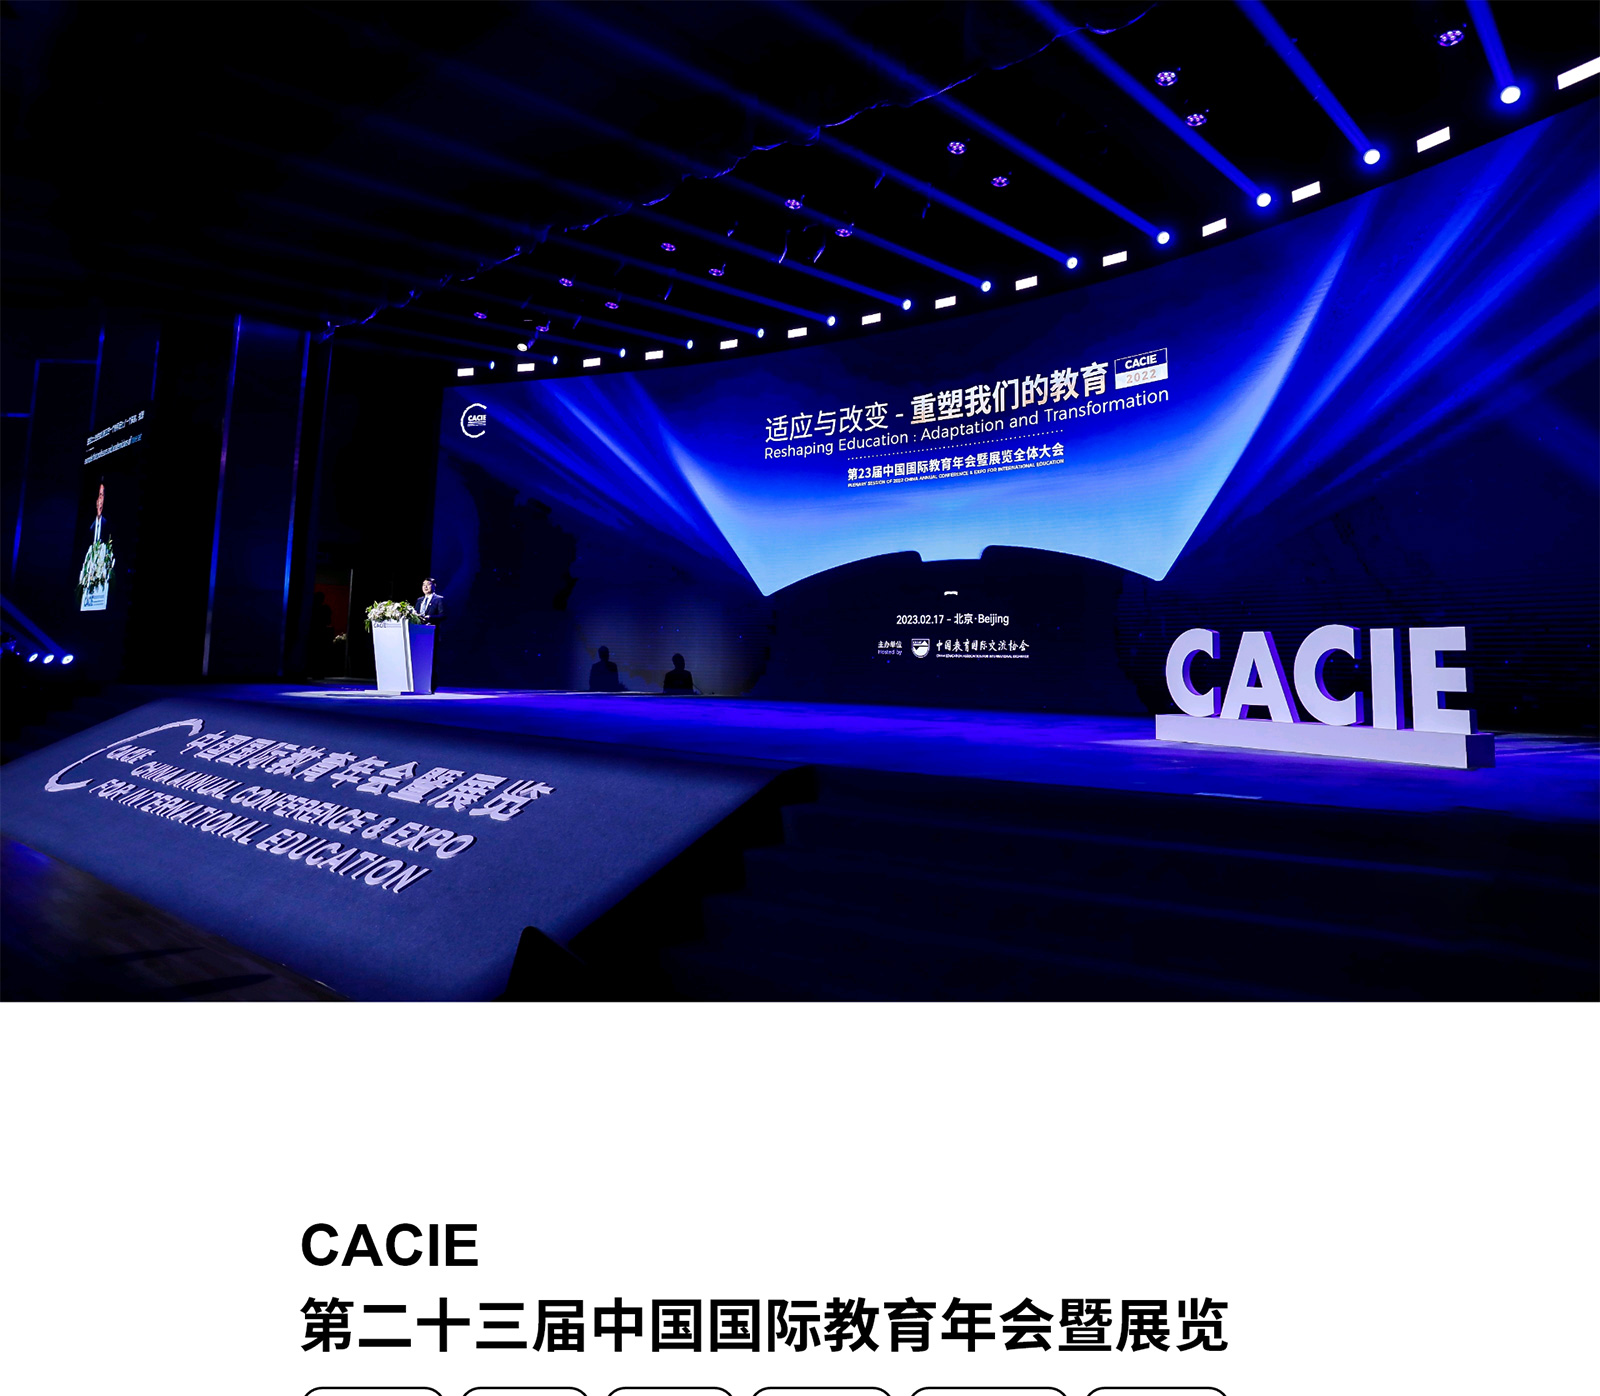 第23届中国国际教育年会暨展览全体大会视觉传达设计网站0-素马设计作品